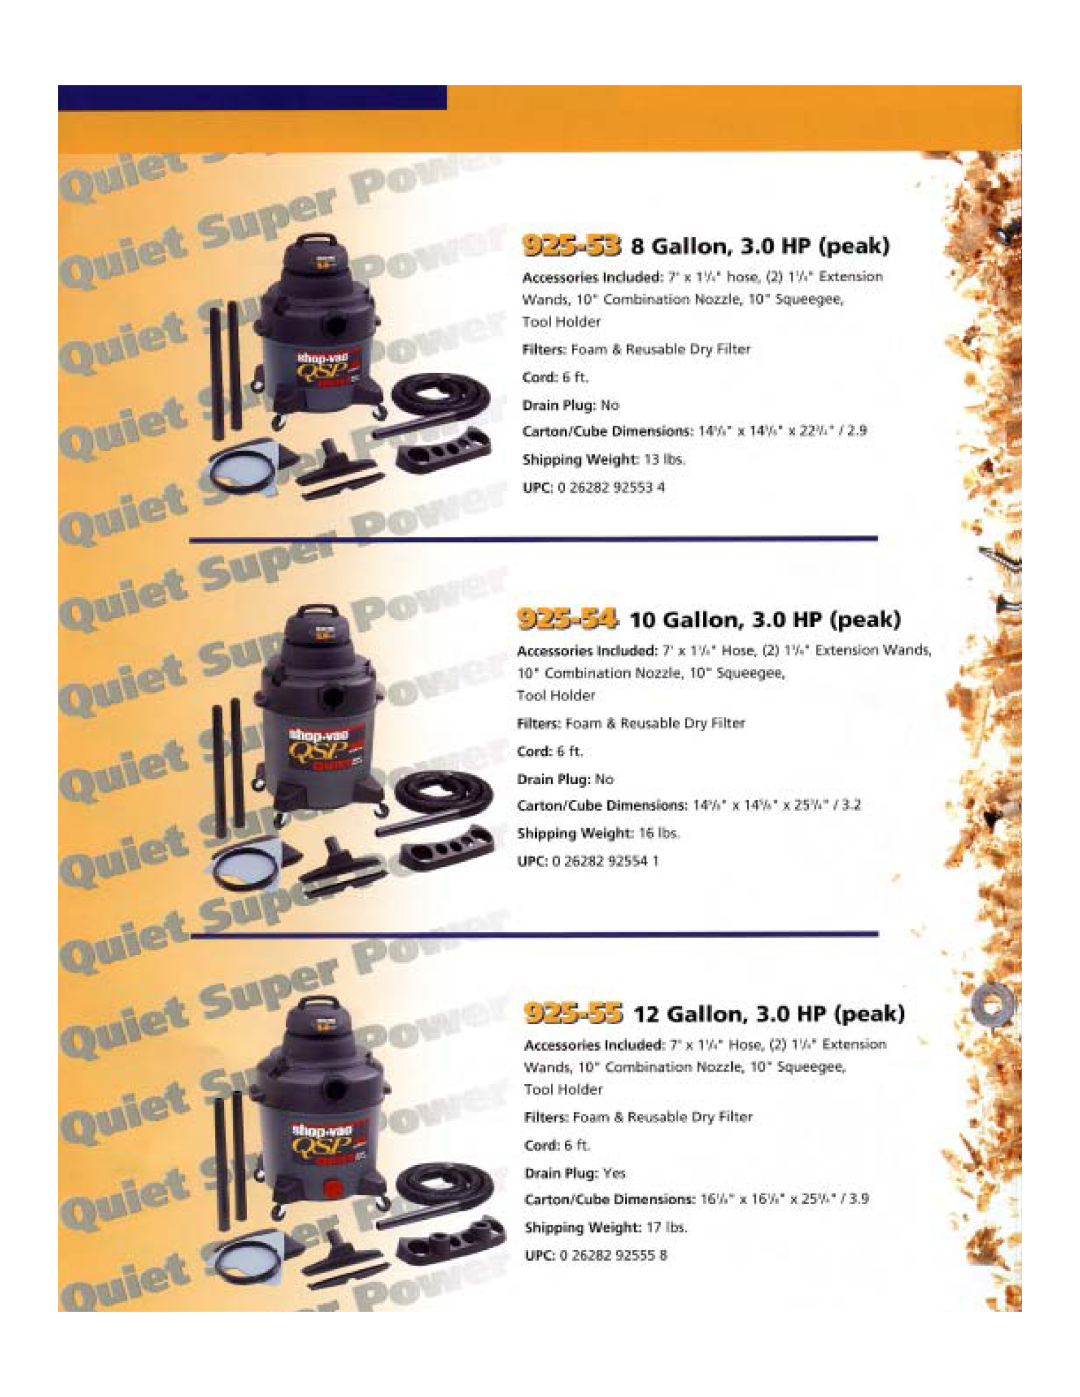 Shop-Vac QSP Series manual 